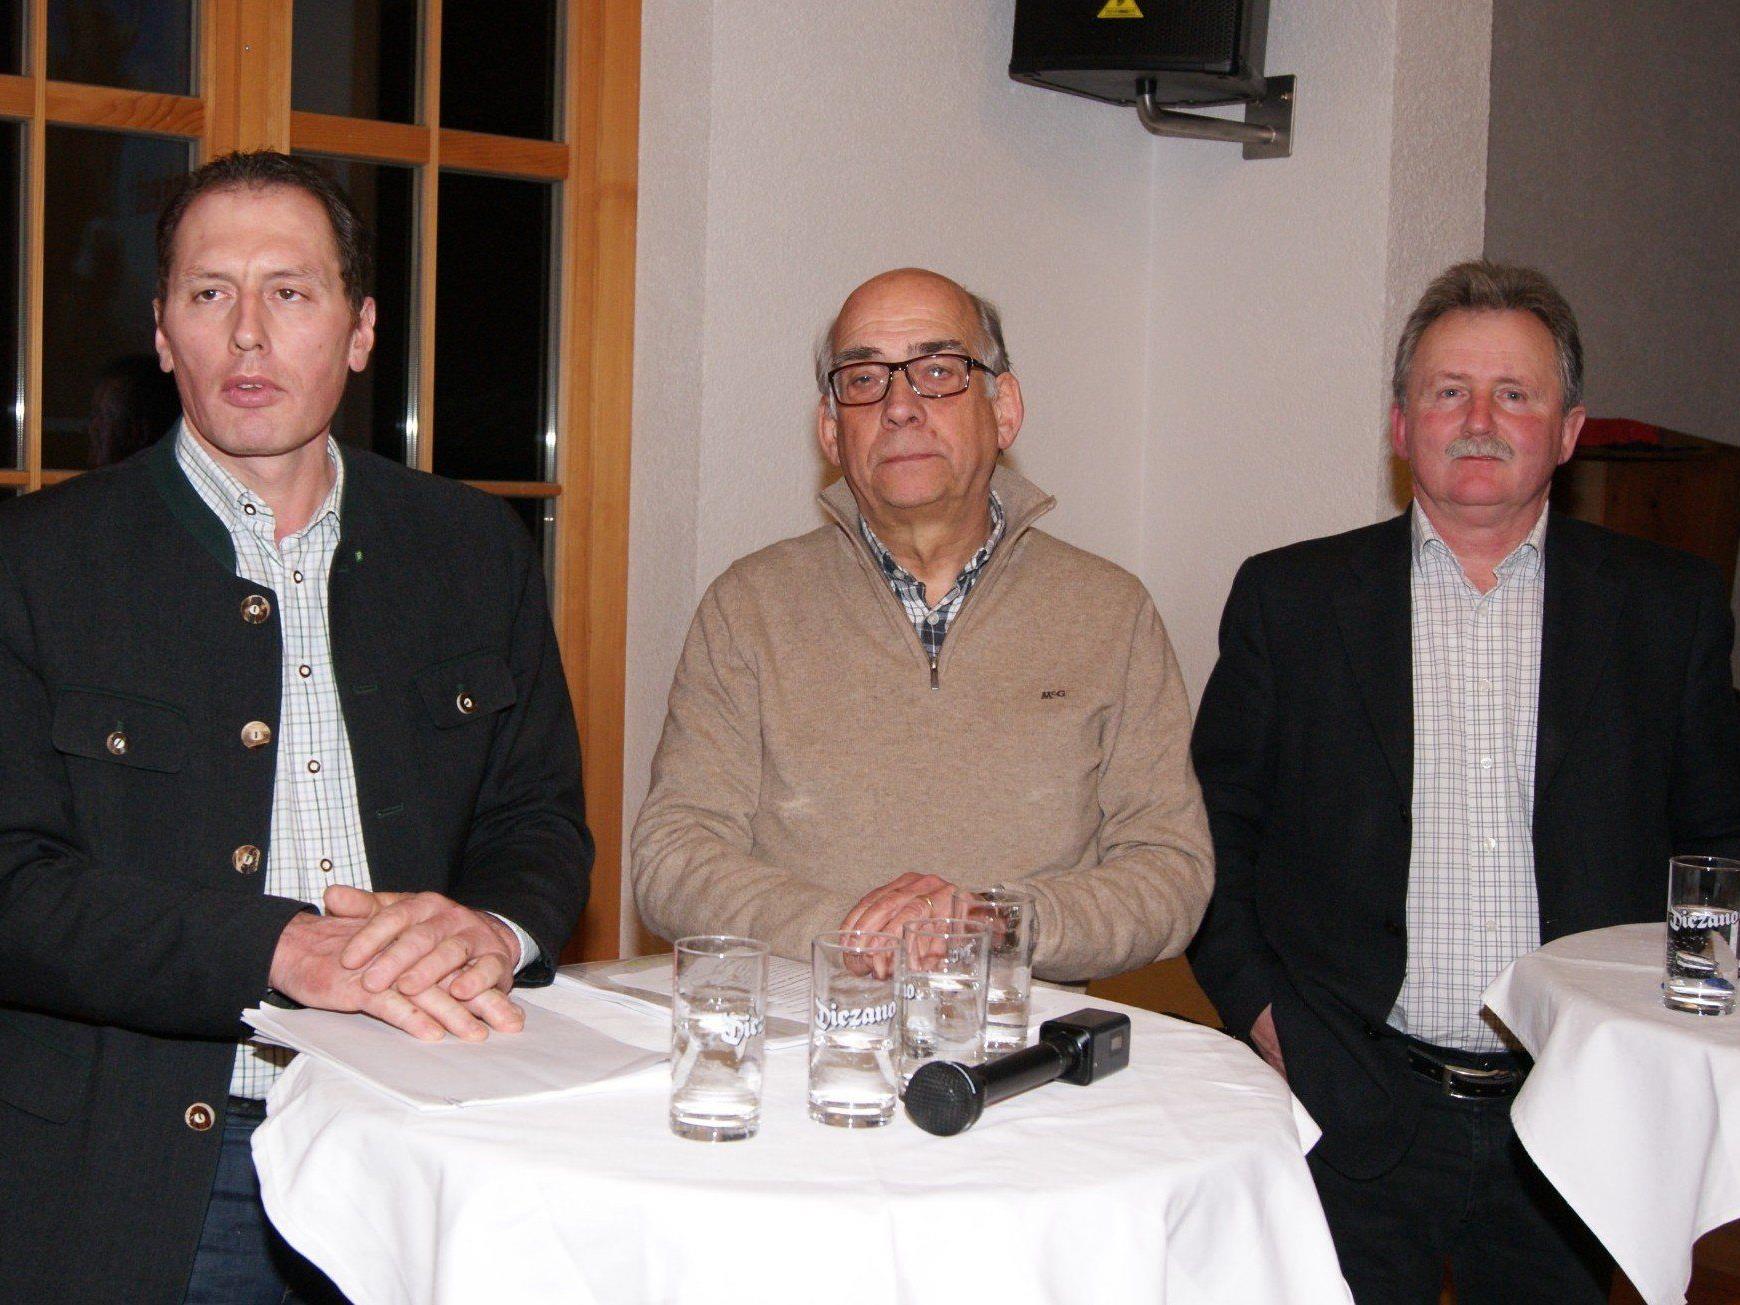 Am Podium informieren unter anderem Josef Moosbrugger, Ernst Albrich und Markus Netzer.